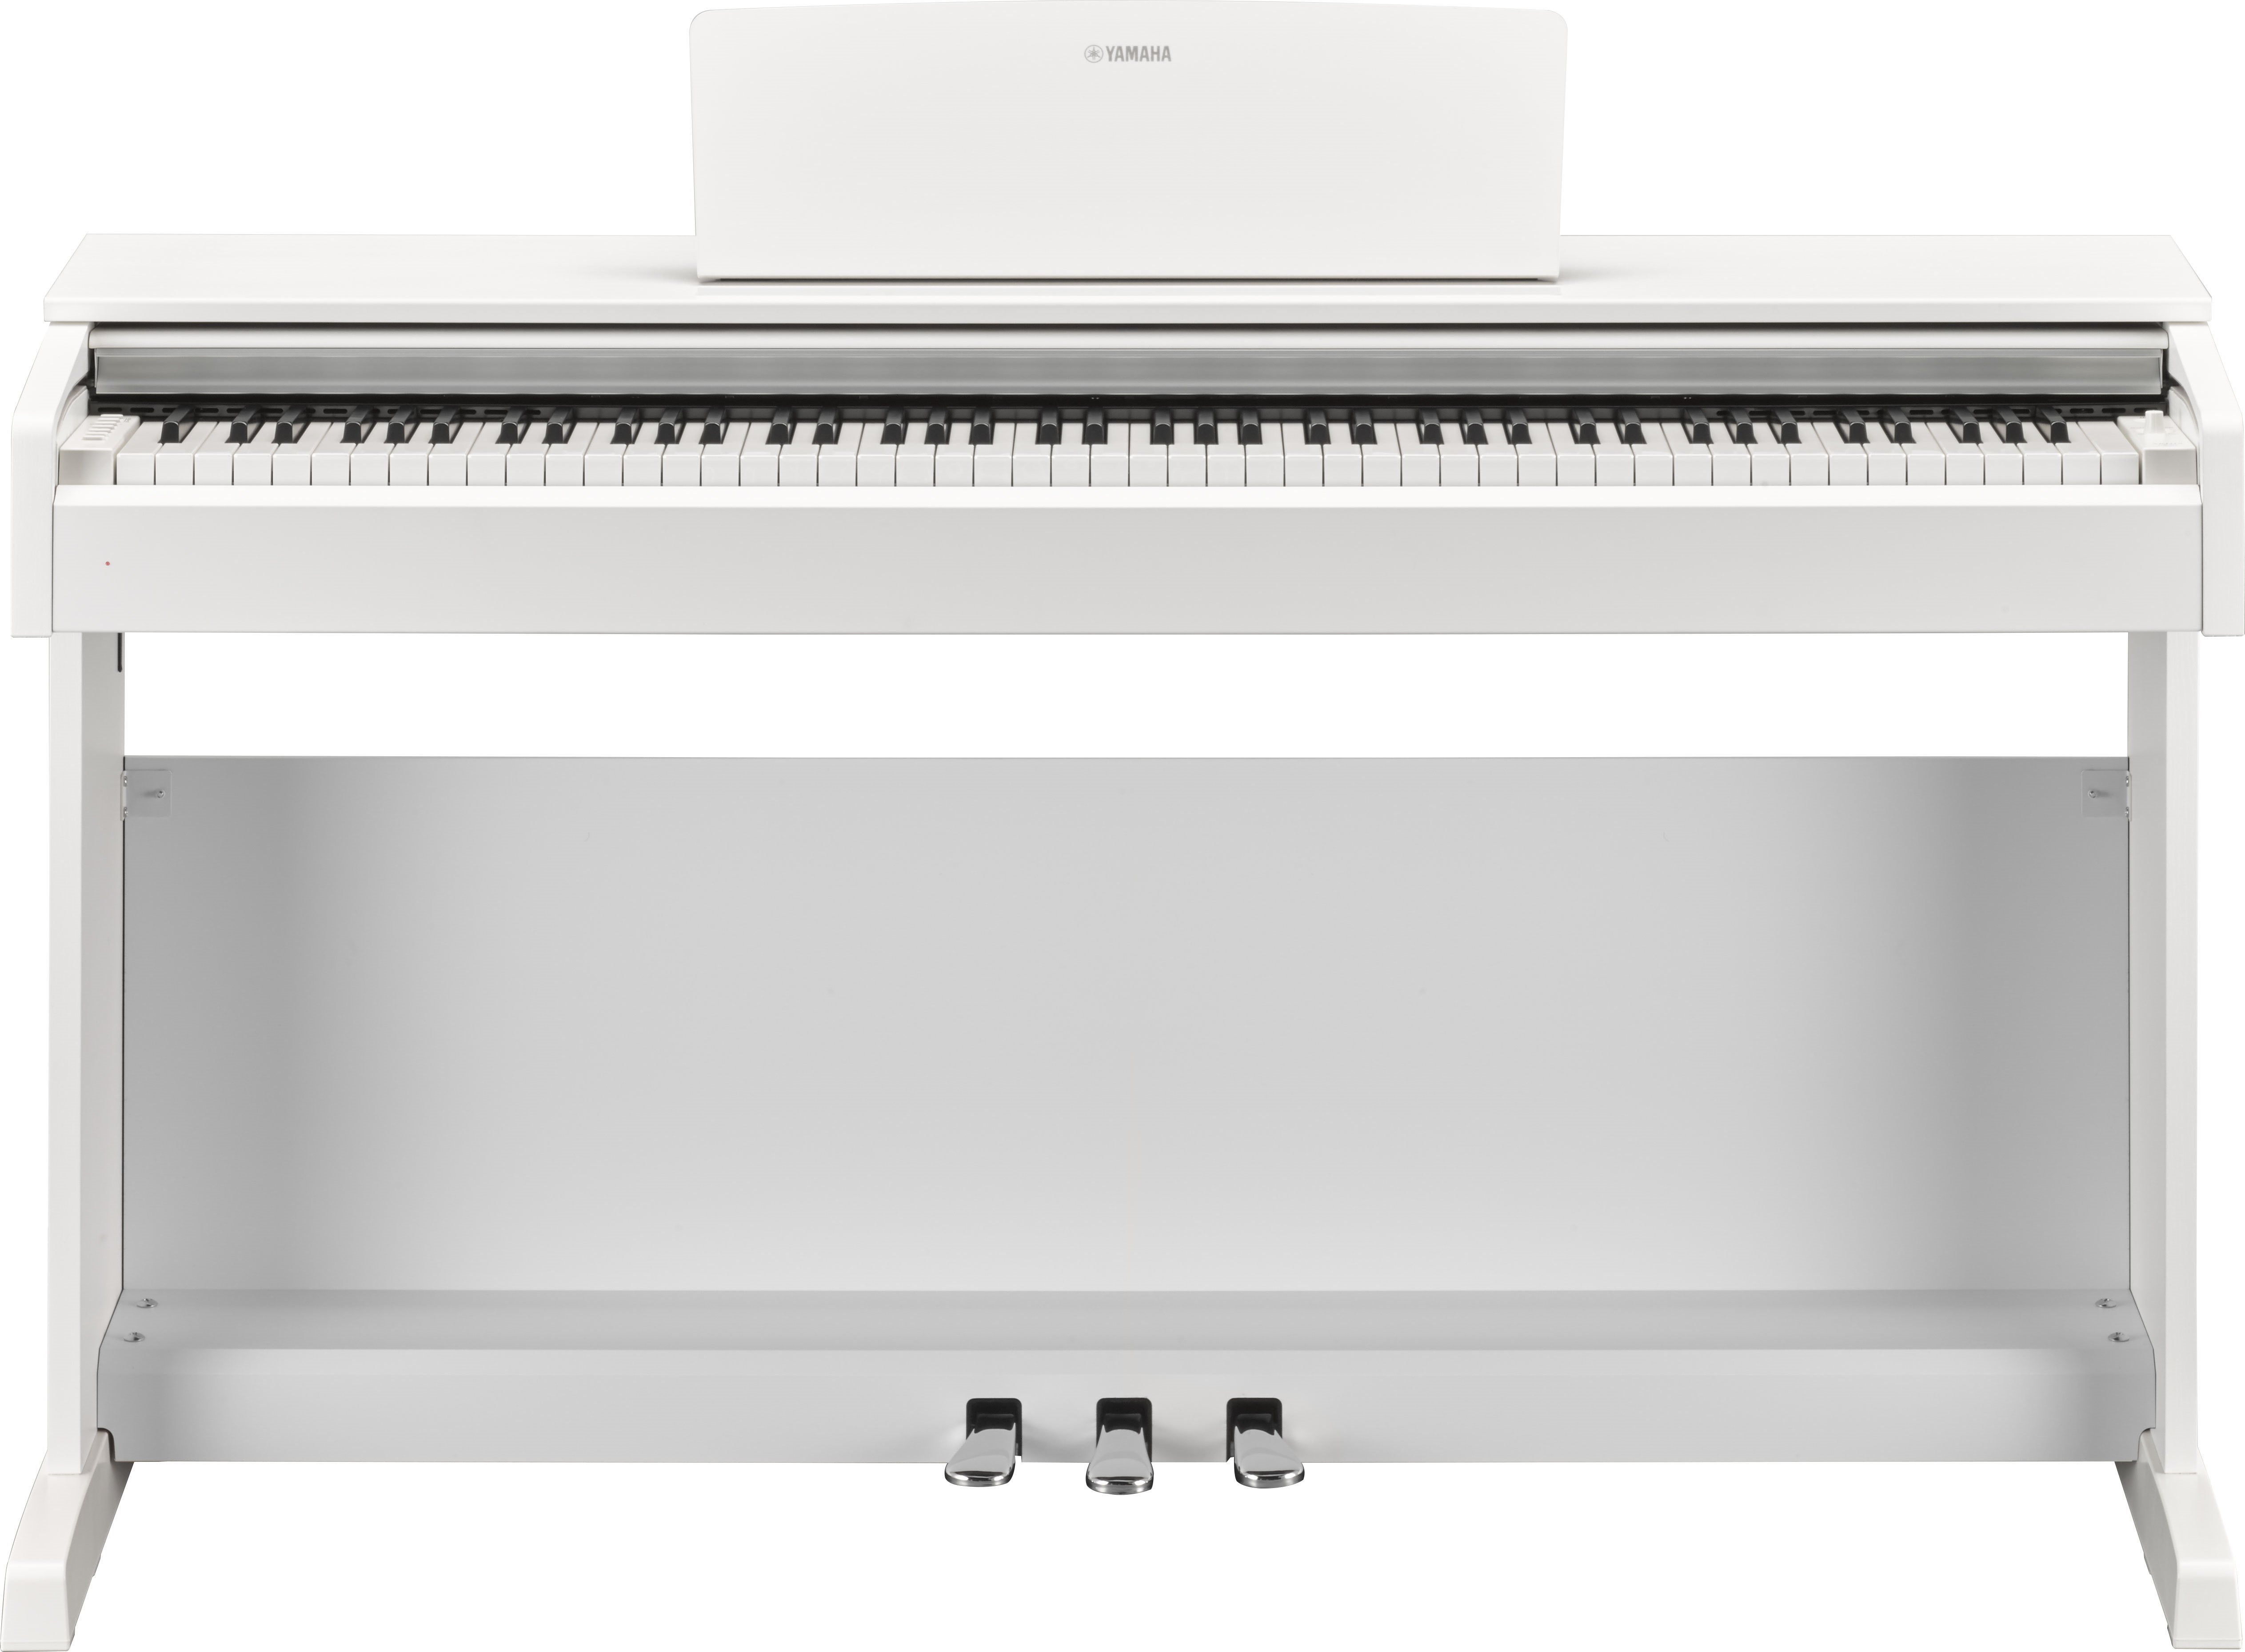 pausa desconectado Azul YDP-143 - Descripción - ARIUS - Pianos - Instrumentos musicales - Productos  - Yamaha - España